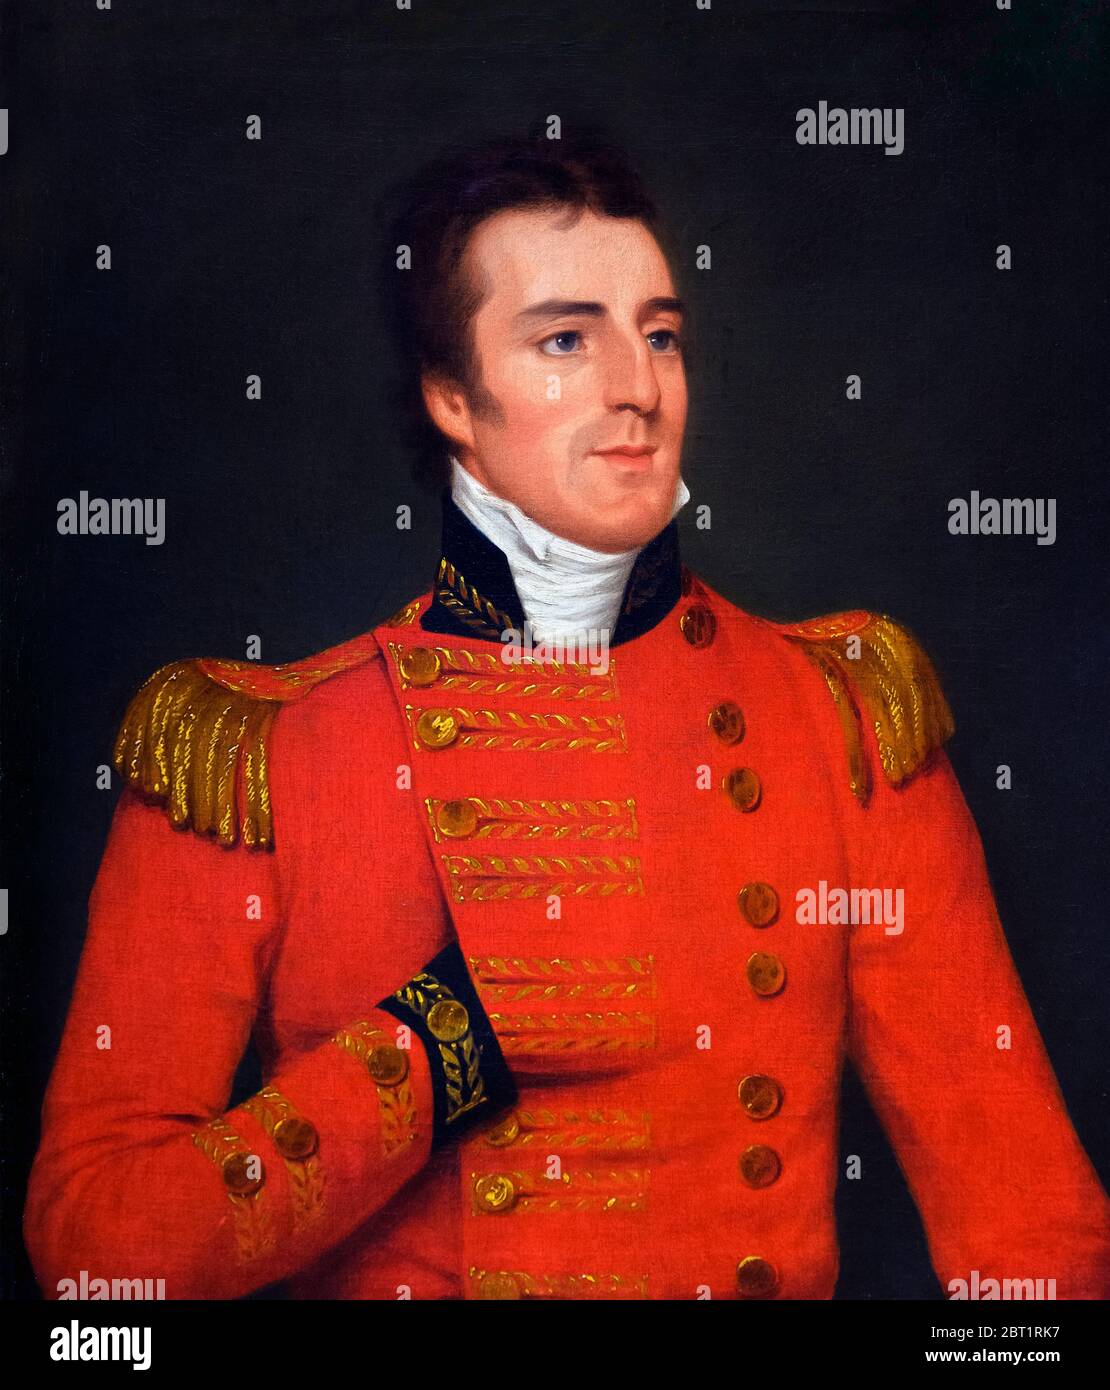 Mariscal de campo Arthur Wellesley, 1er Duque de Wellington, retrato pintado por Robert Home, óleo sobre lienzo, 1804. Foto de stock